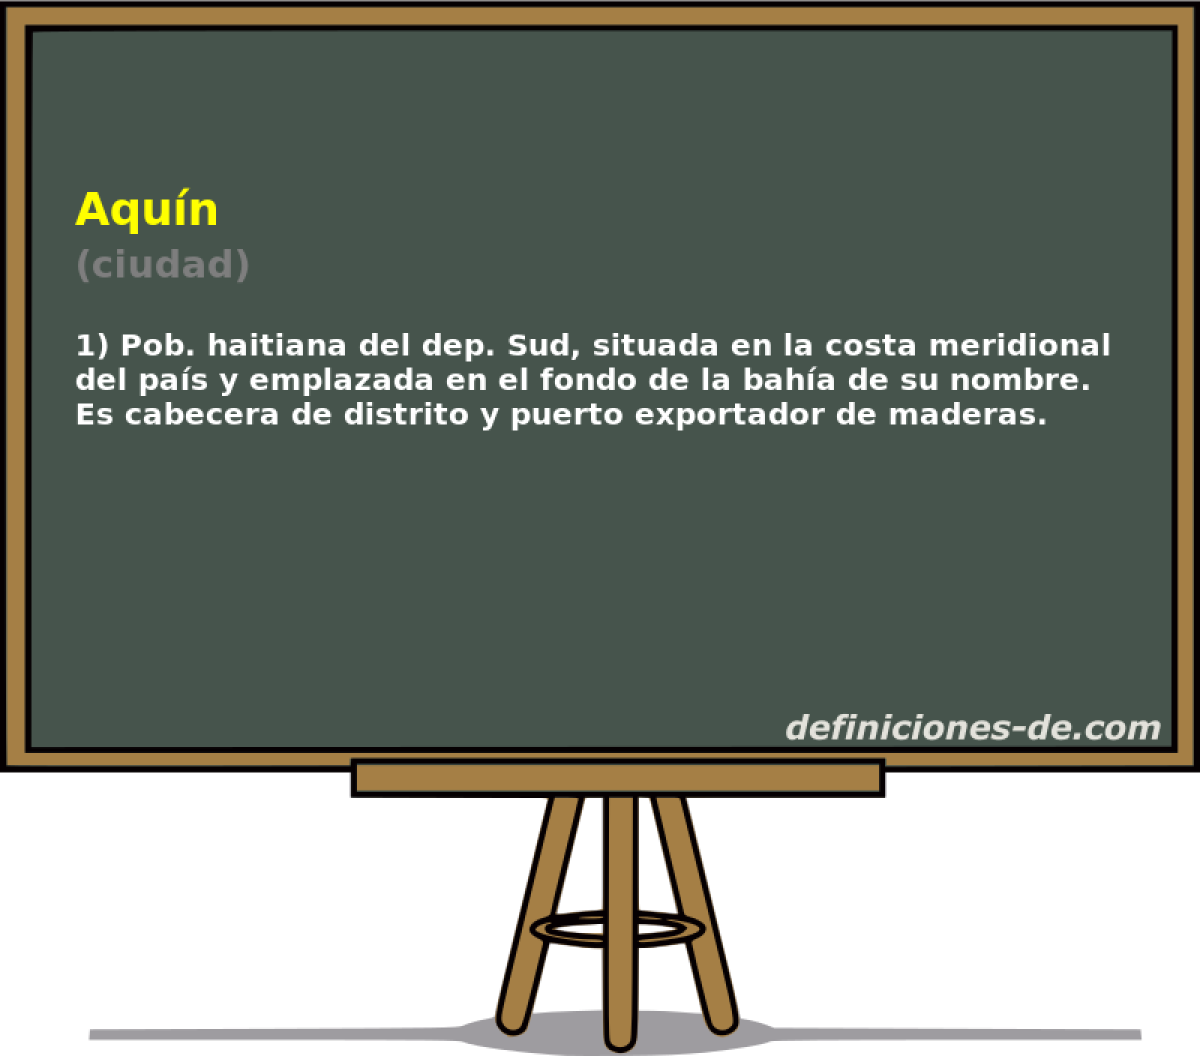 Aqun (ciudad)